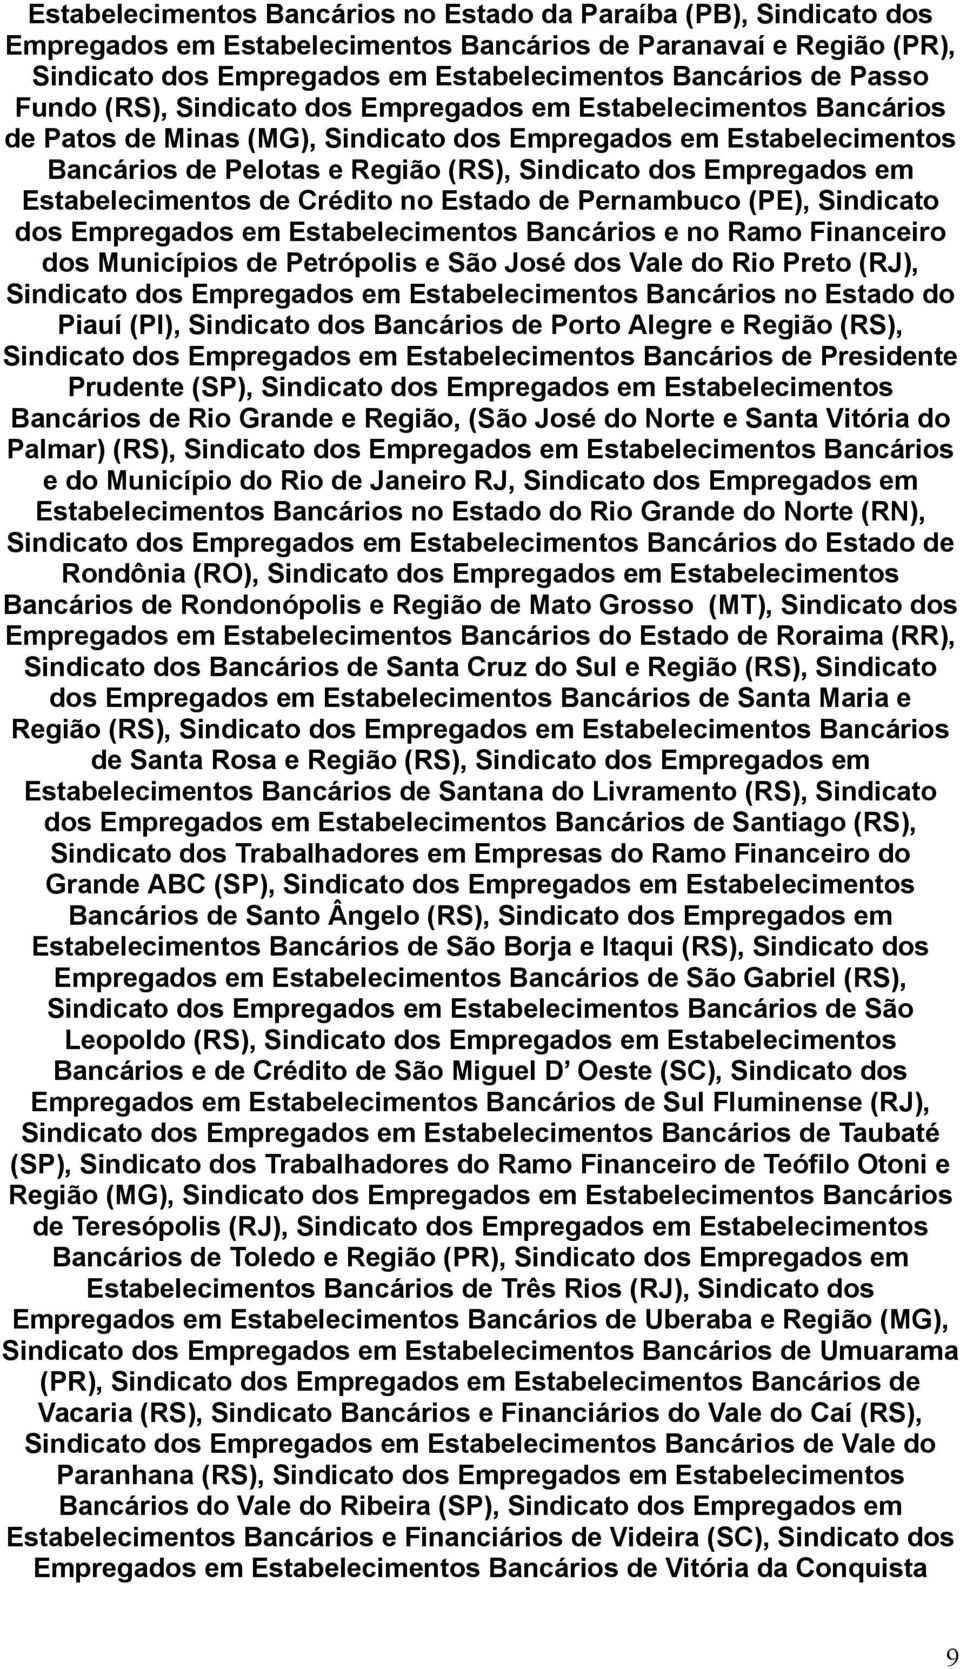 Empregados em Estabelecimentos de Crédito no Estado de Pernambuco (PE), Sindicato dos Empregados em Estabelecimentos Bancários e no Ramo Financeiro dos Municípios de Petrópolis e São José dos Vale do